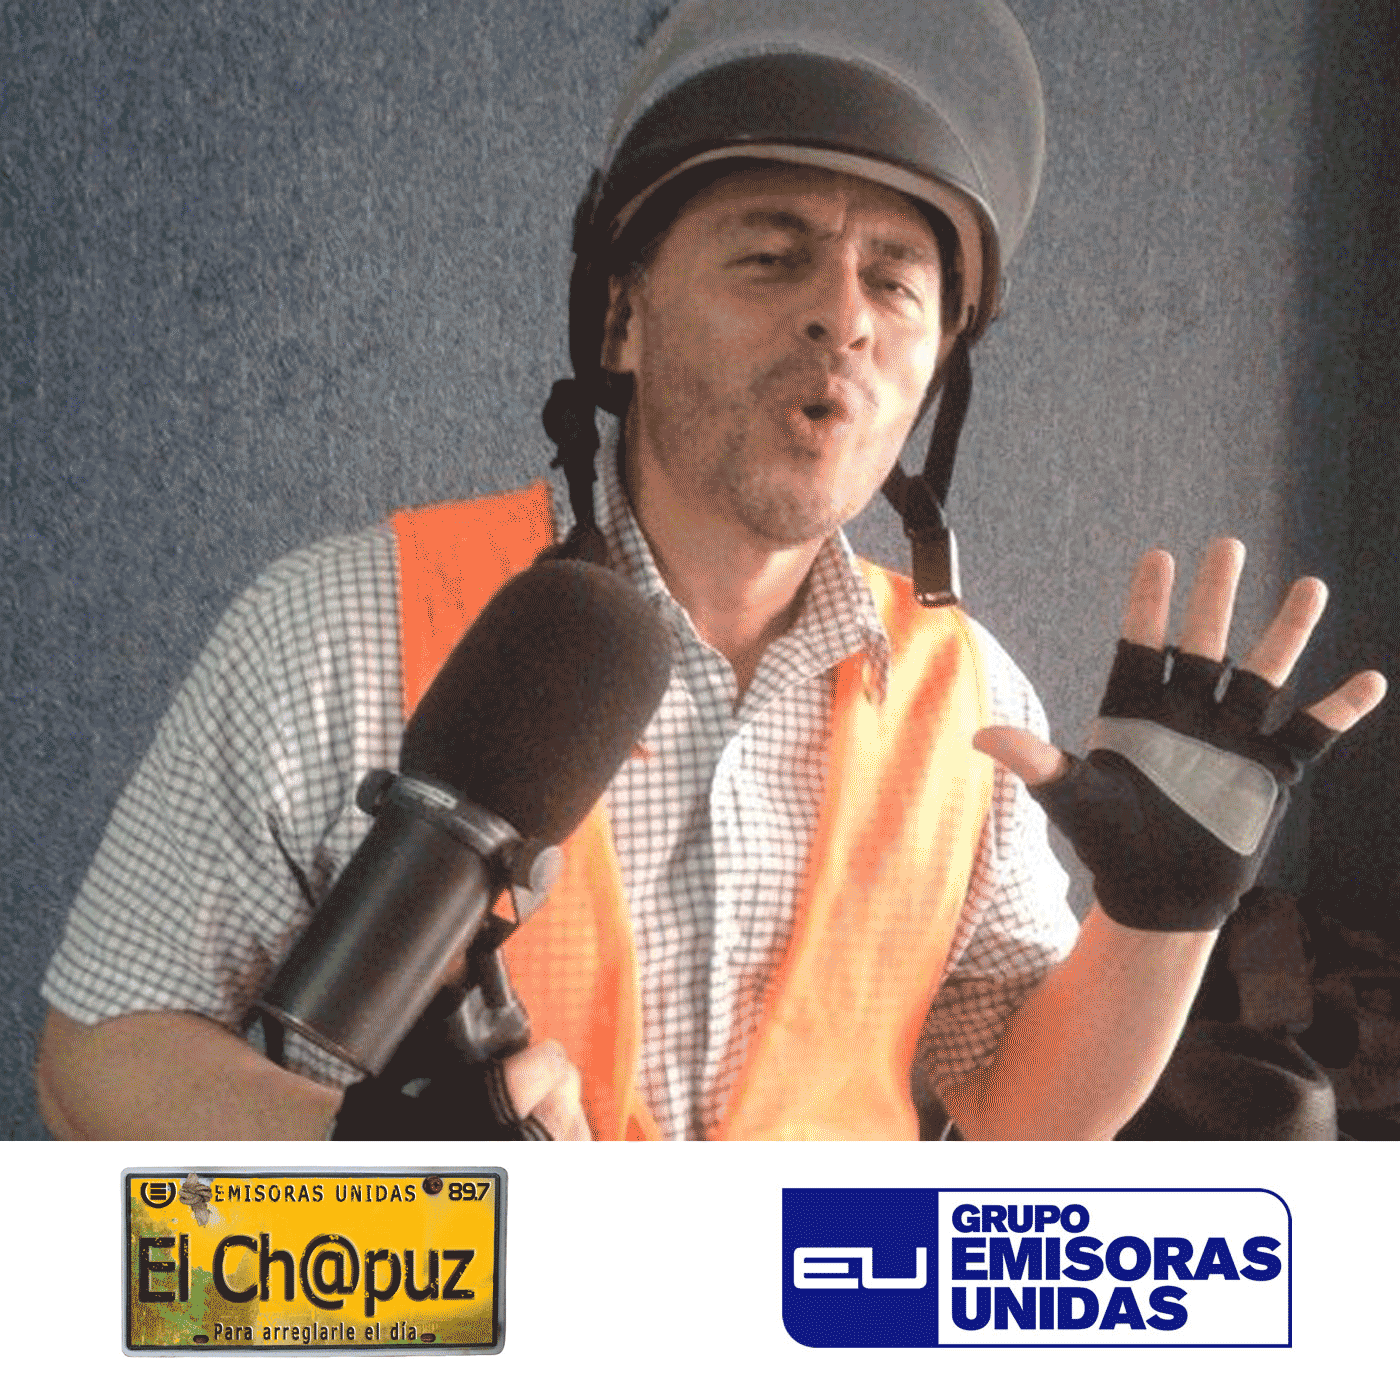 EC037 - El Chapuz - Emisoras unidas - #CaminitoDeLaDelia